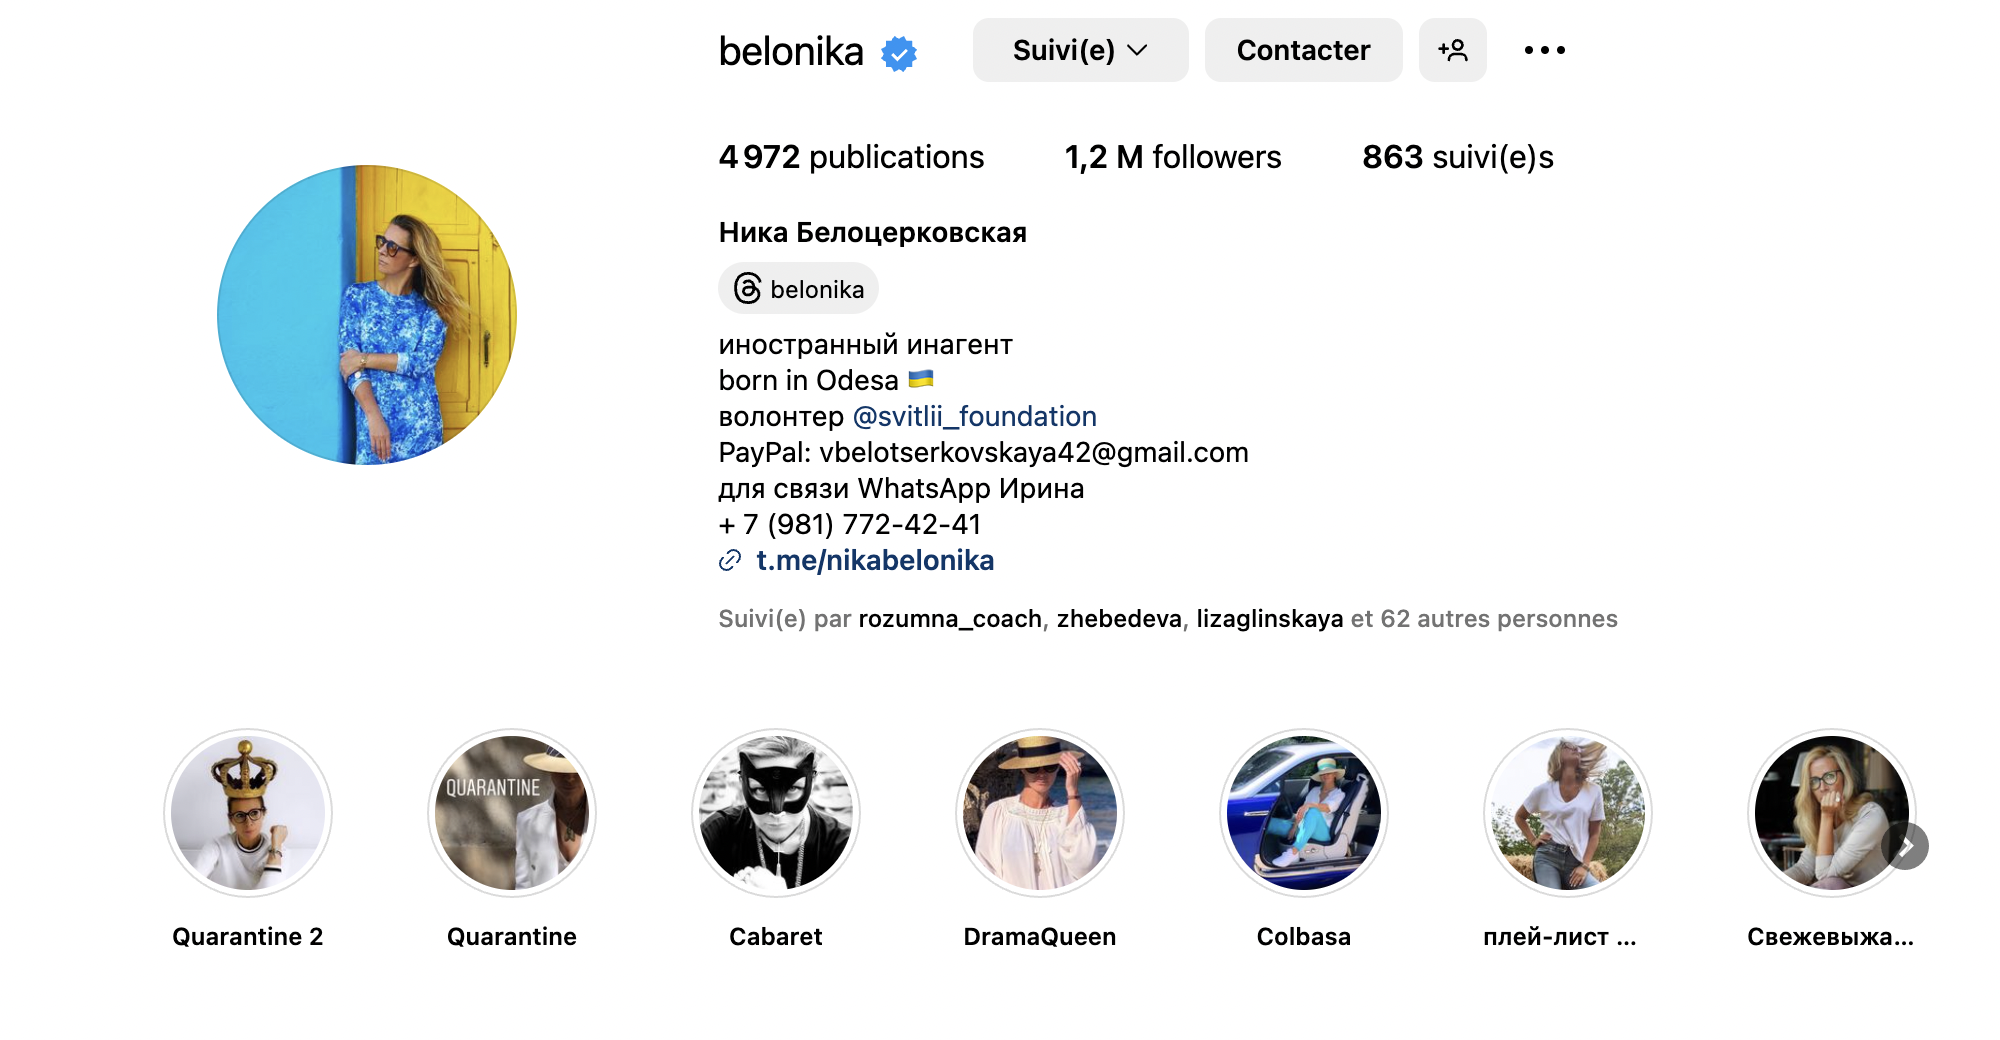 Профиль в Instagram украинского блогера Ники Белоцерковской